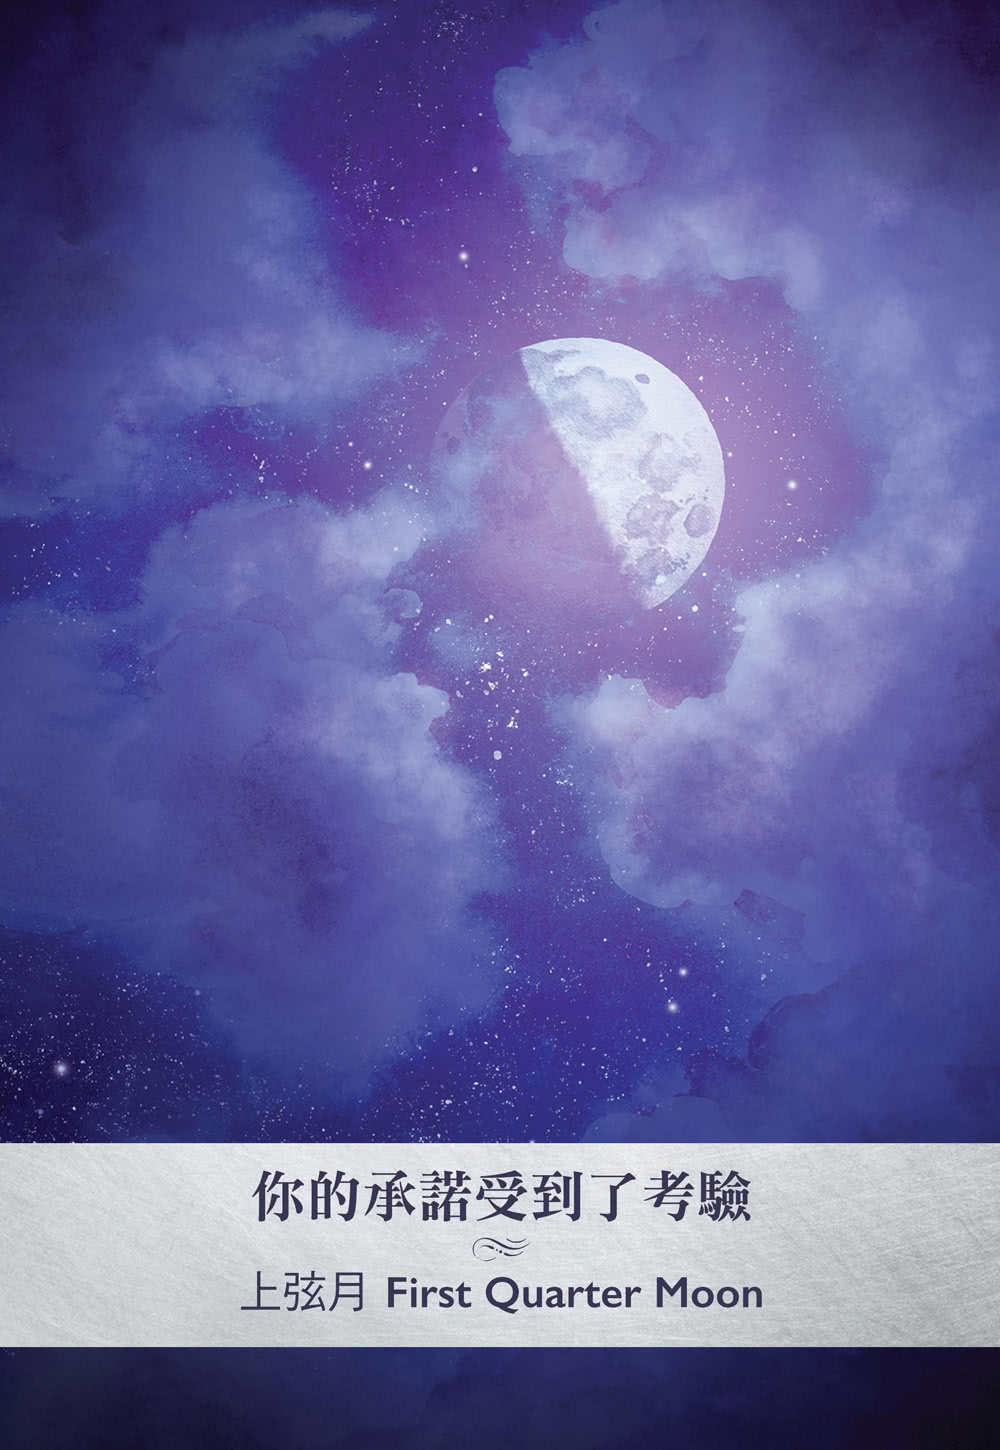 月相神諭卡：連接古老的月亮智慧，開創屬於你的夢想和未來